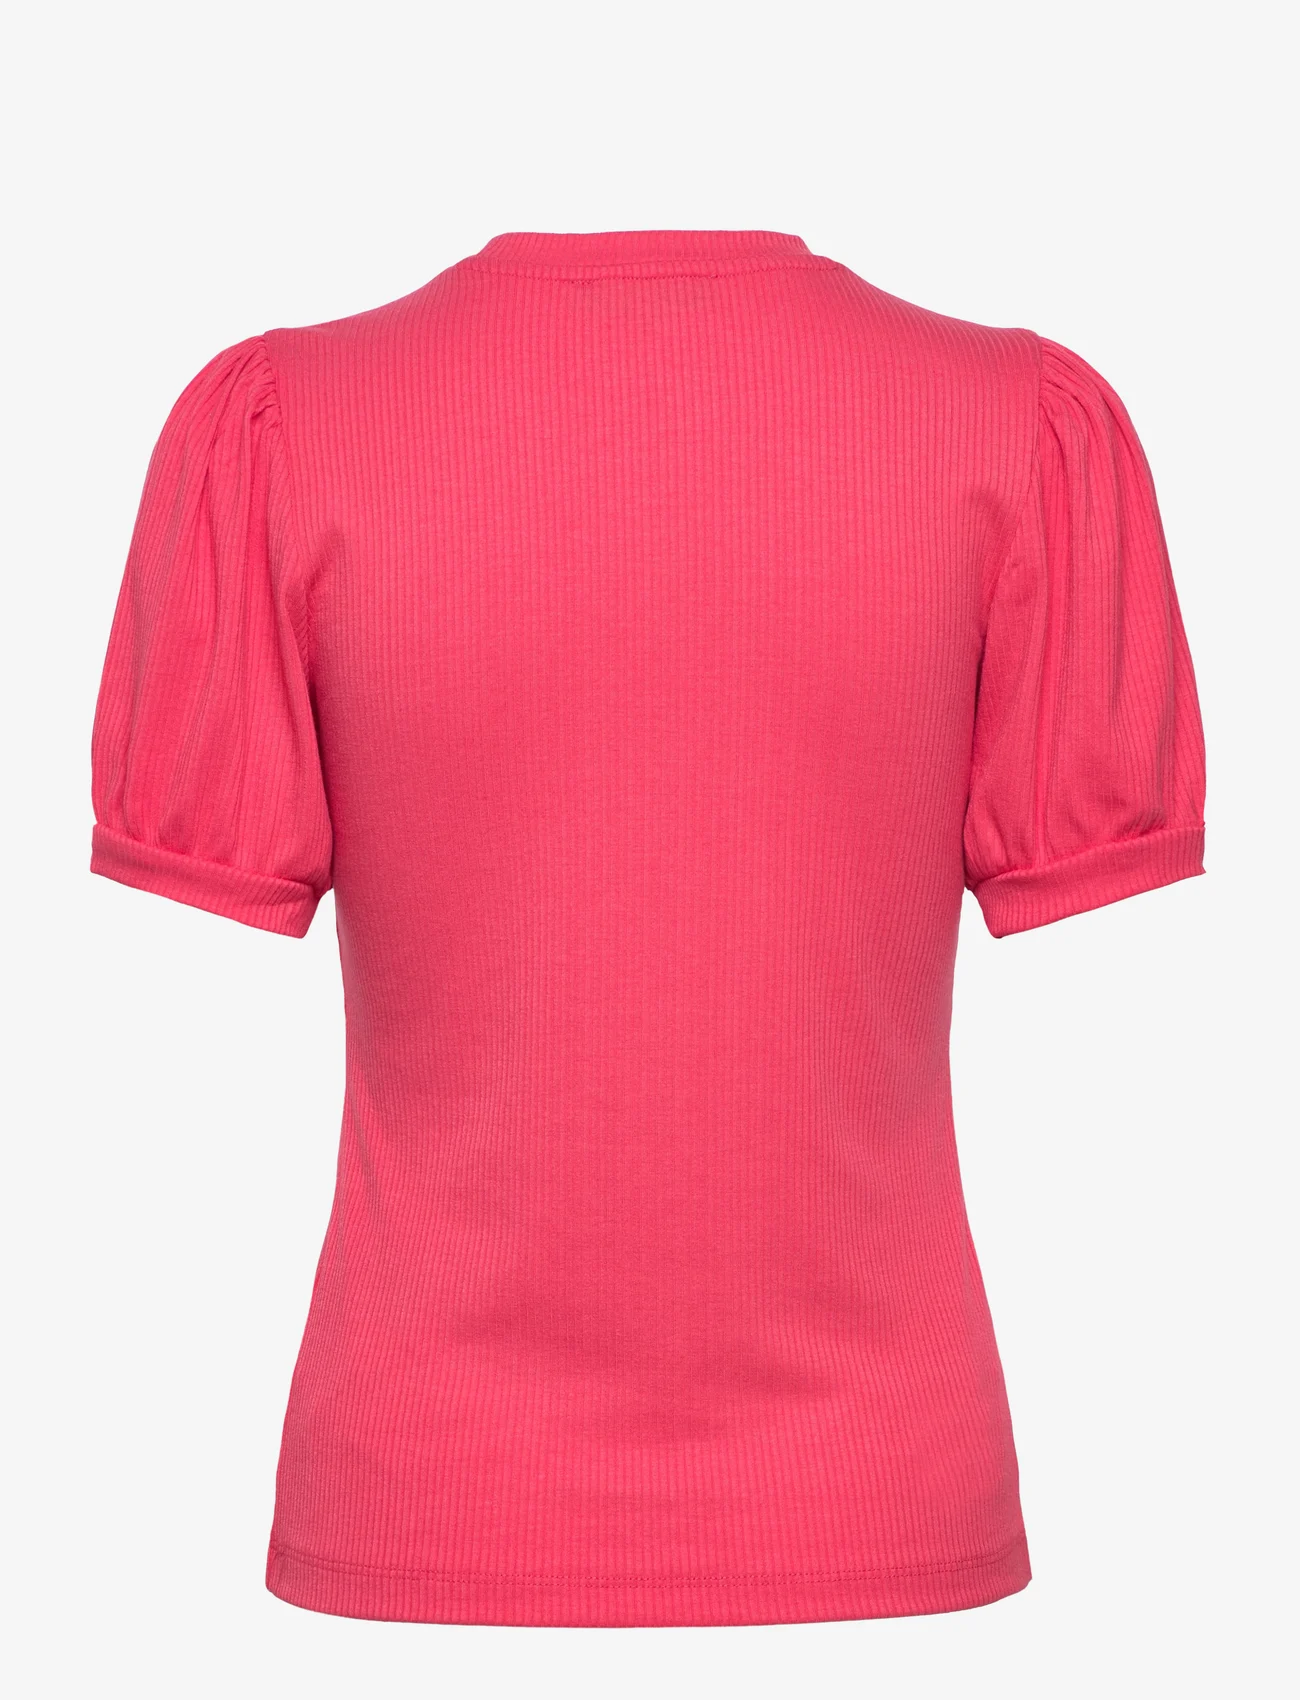 Minus - Johanna T-shirt - die niedrigsten preise - teaberry pink - 1